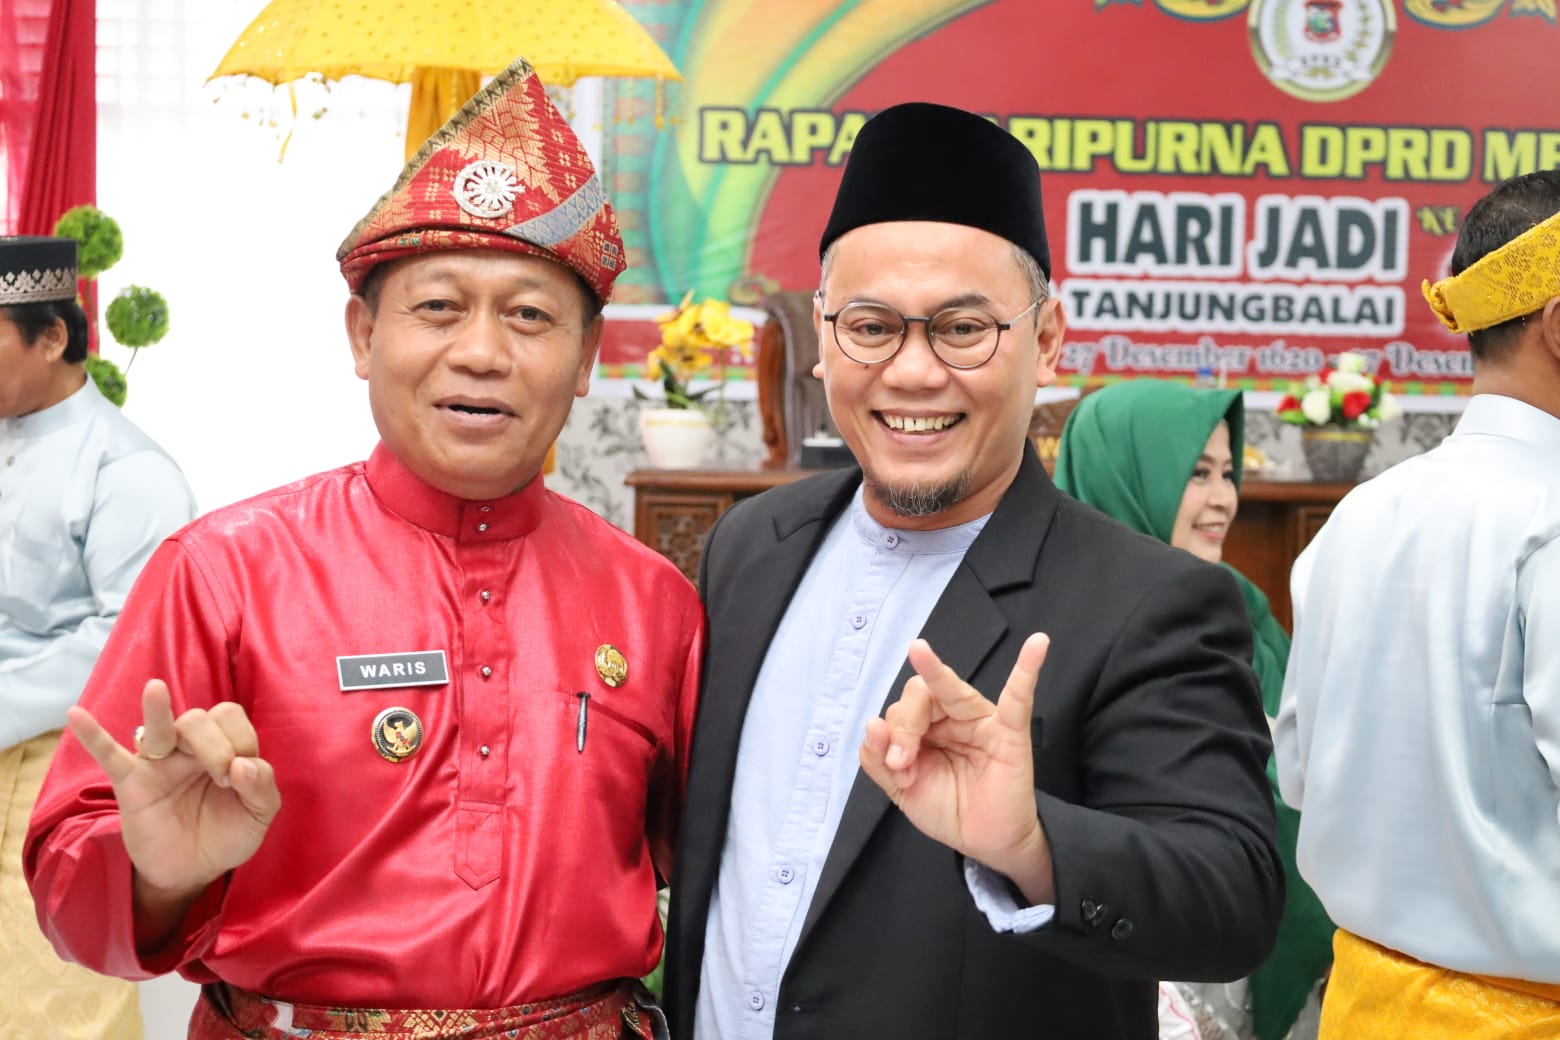 HUT Ke-420 Tahun, Rudiyanto Berharap Kota Tanjung Balai Wujudkan Pembangunan Dan Pelayanan ke Masyarakat